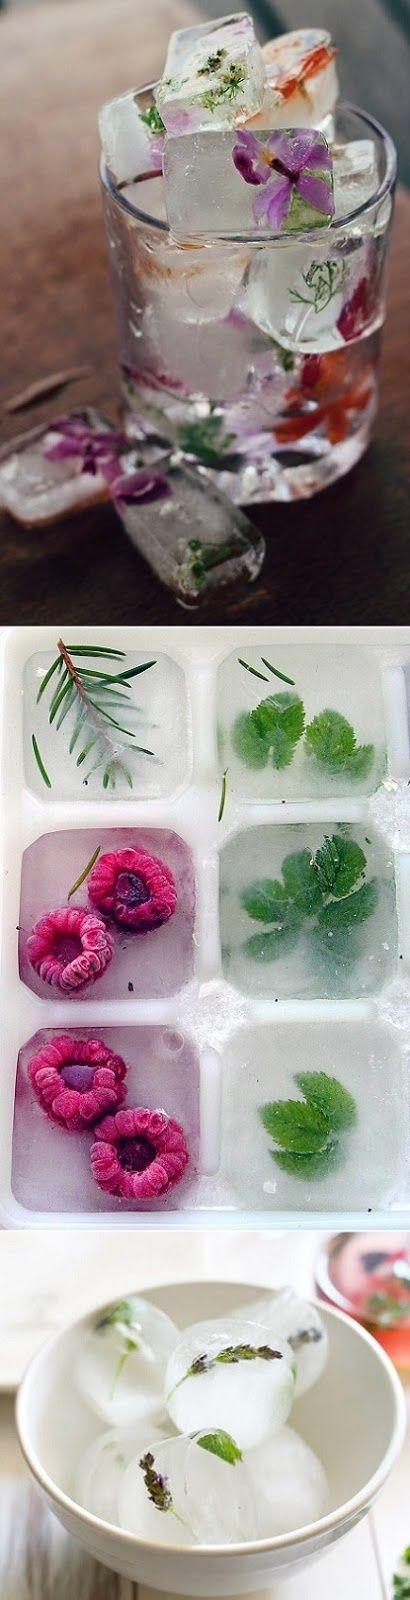 زفاف - How To Make Floral, Fruit, And Herb Ice Cubes